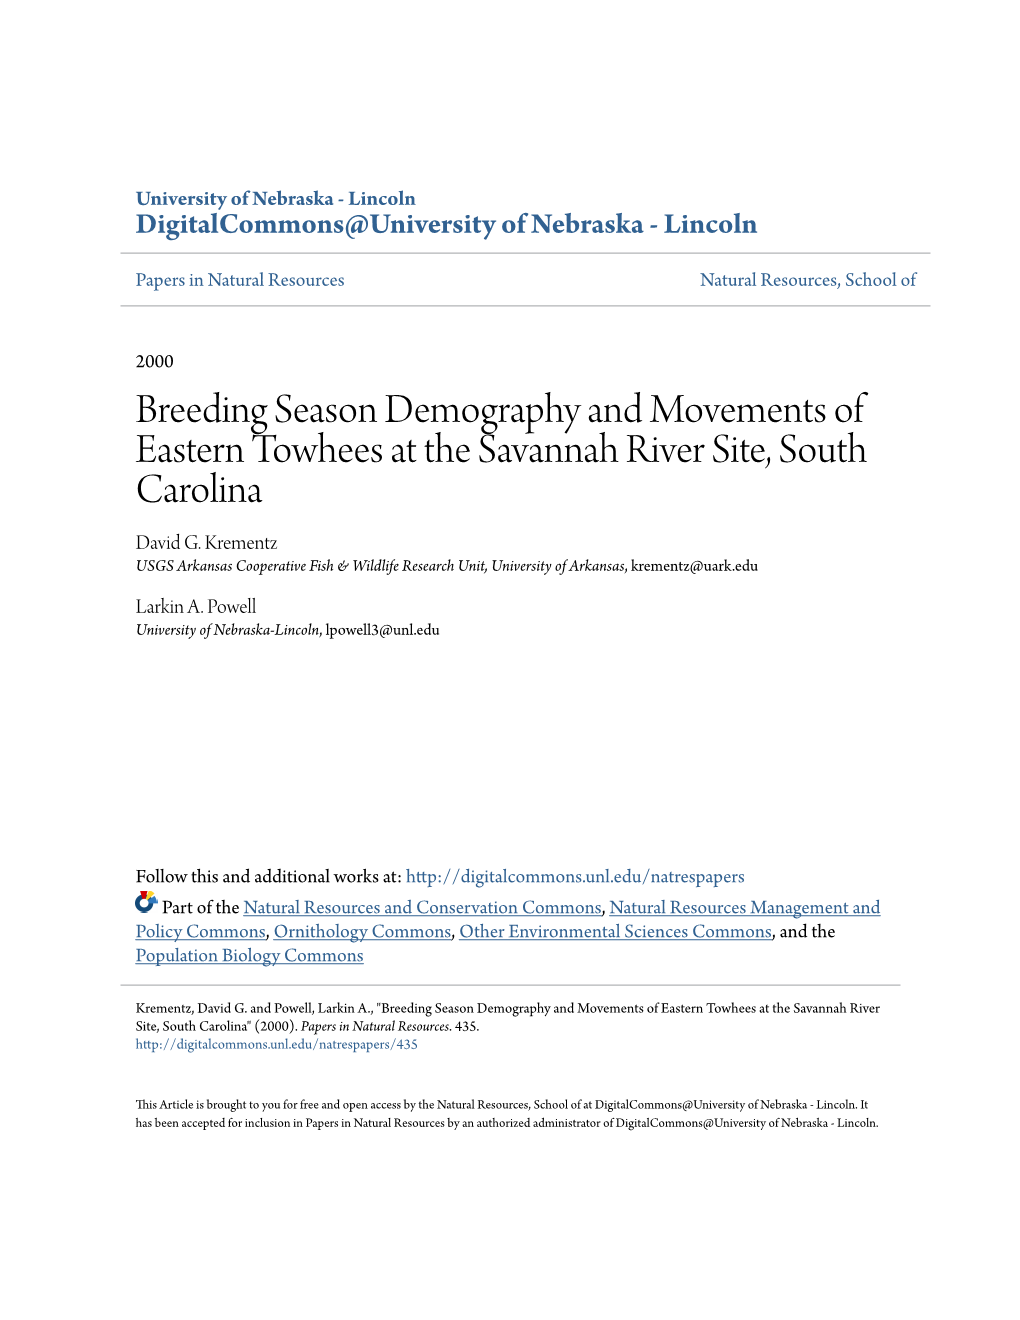 Breeding Season Demography and Movements of Eastern Towhees at the Savannah River Site, South Carolina David G